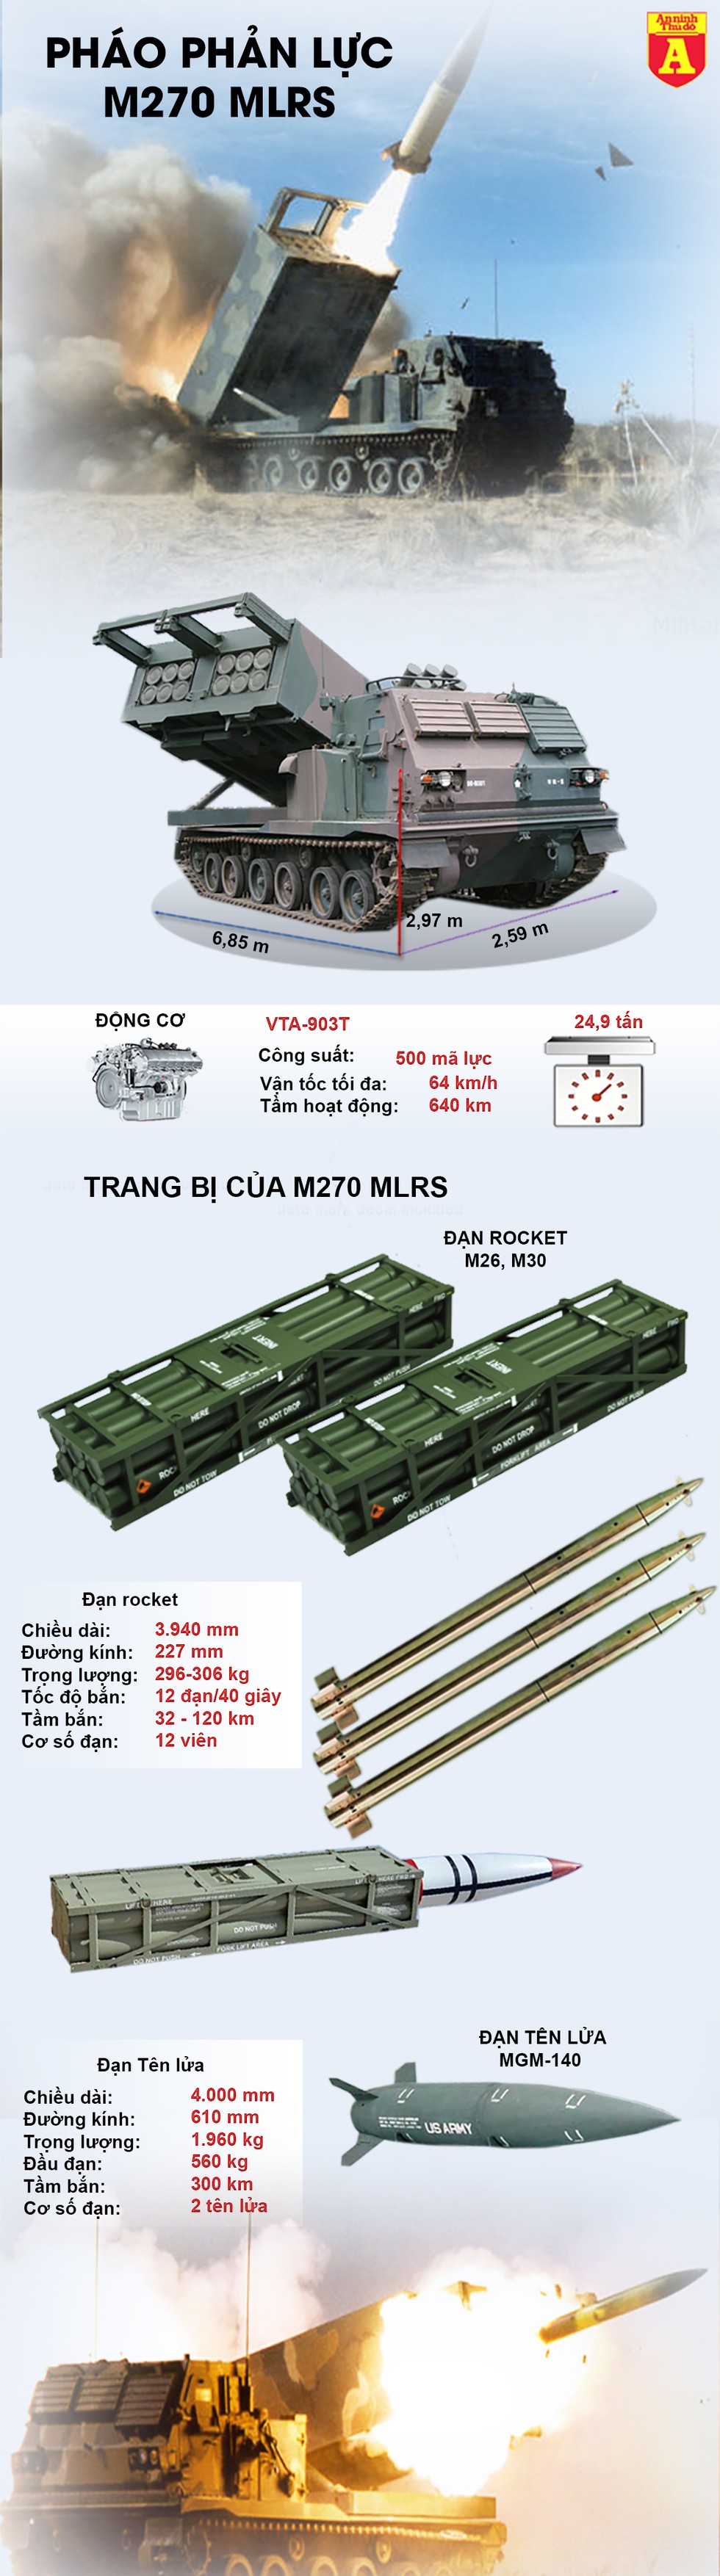 [Infographics] Loại vũ khí mạnh sau bom hạt nhân được Mỹ triển khai bao quanh Nga - Ảnh 1